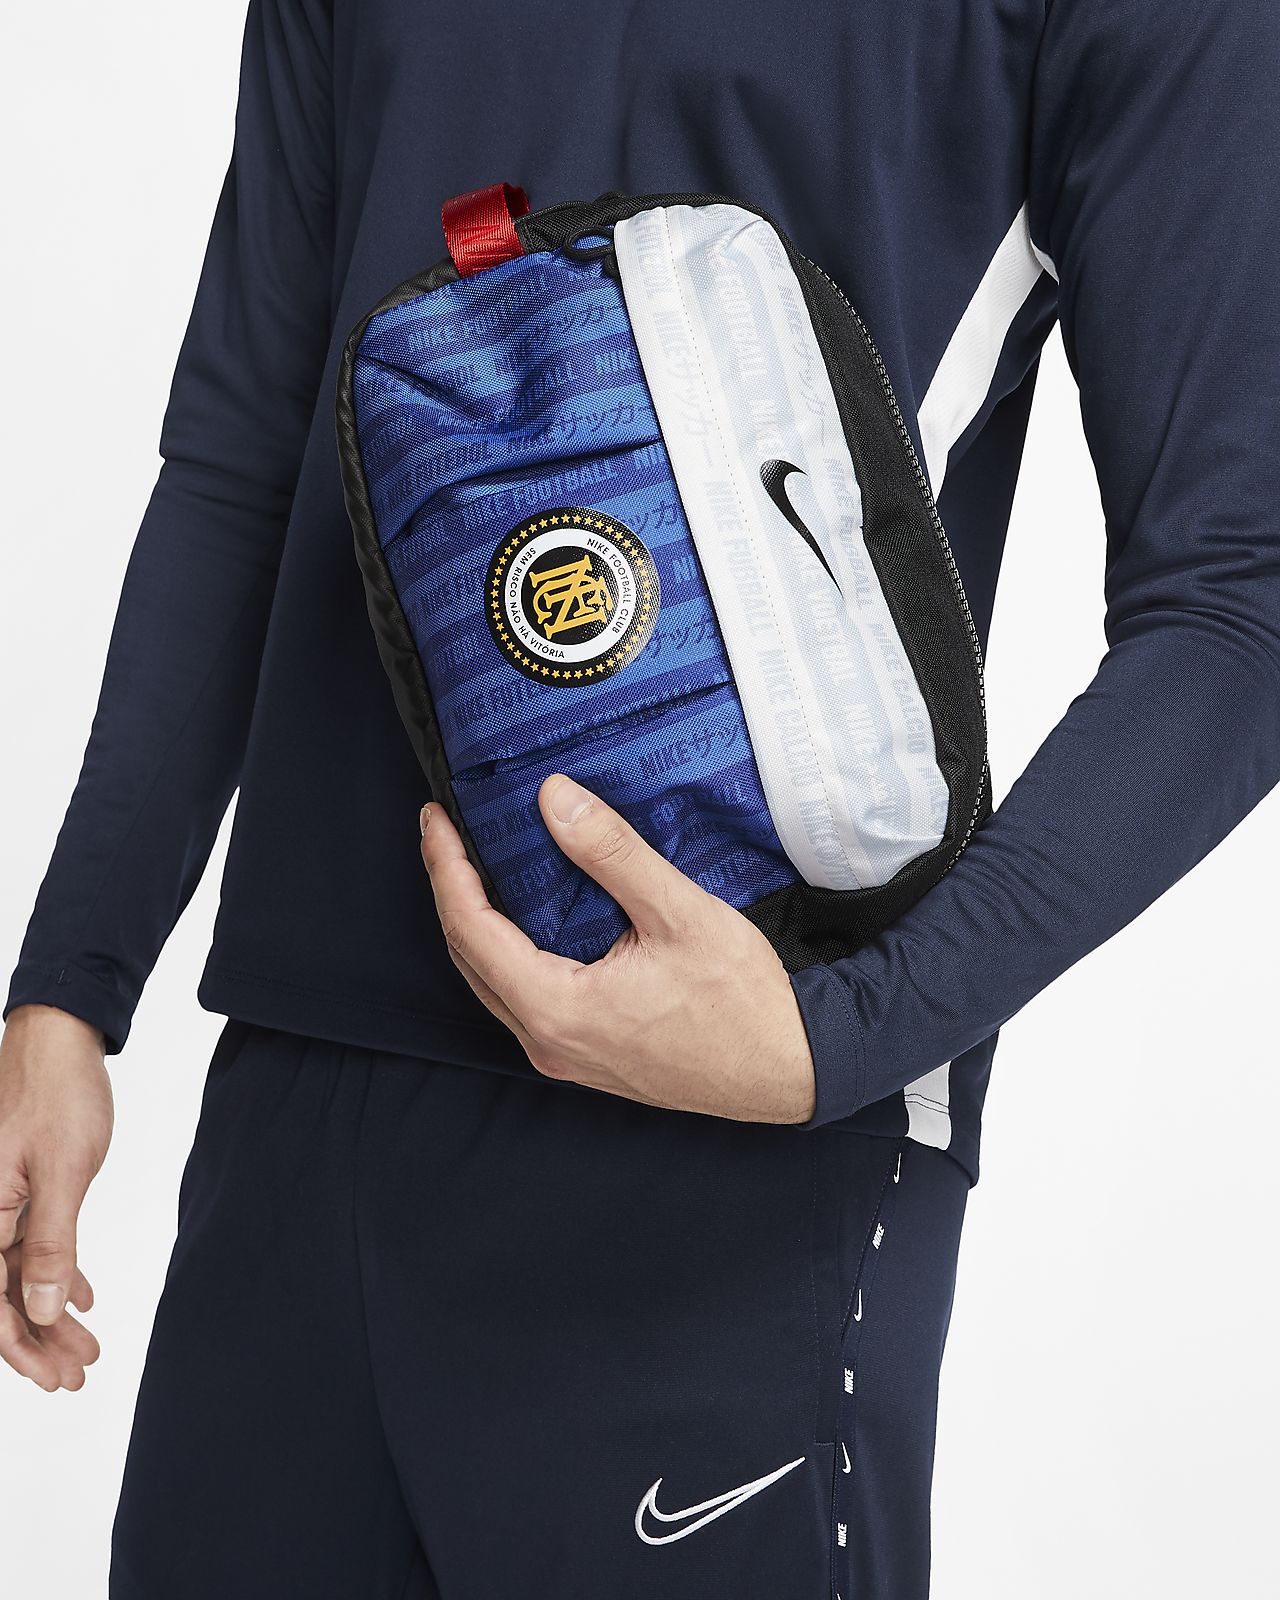 Nike F.C. Football Utility Bag. Nike ZA